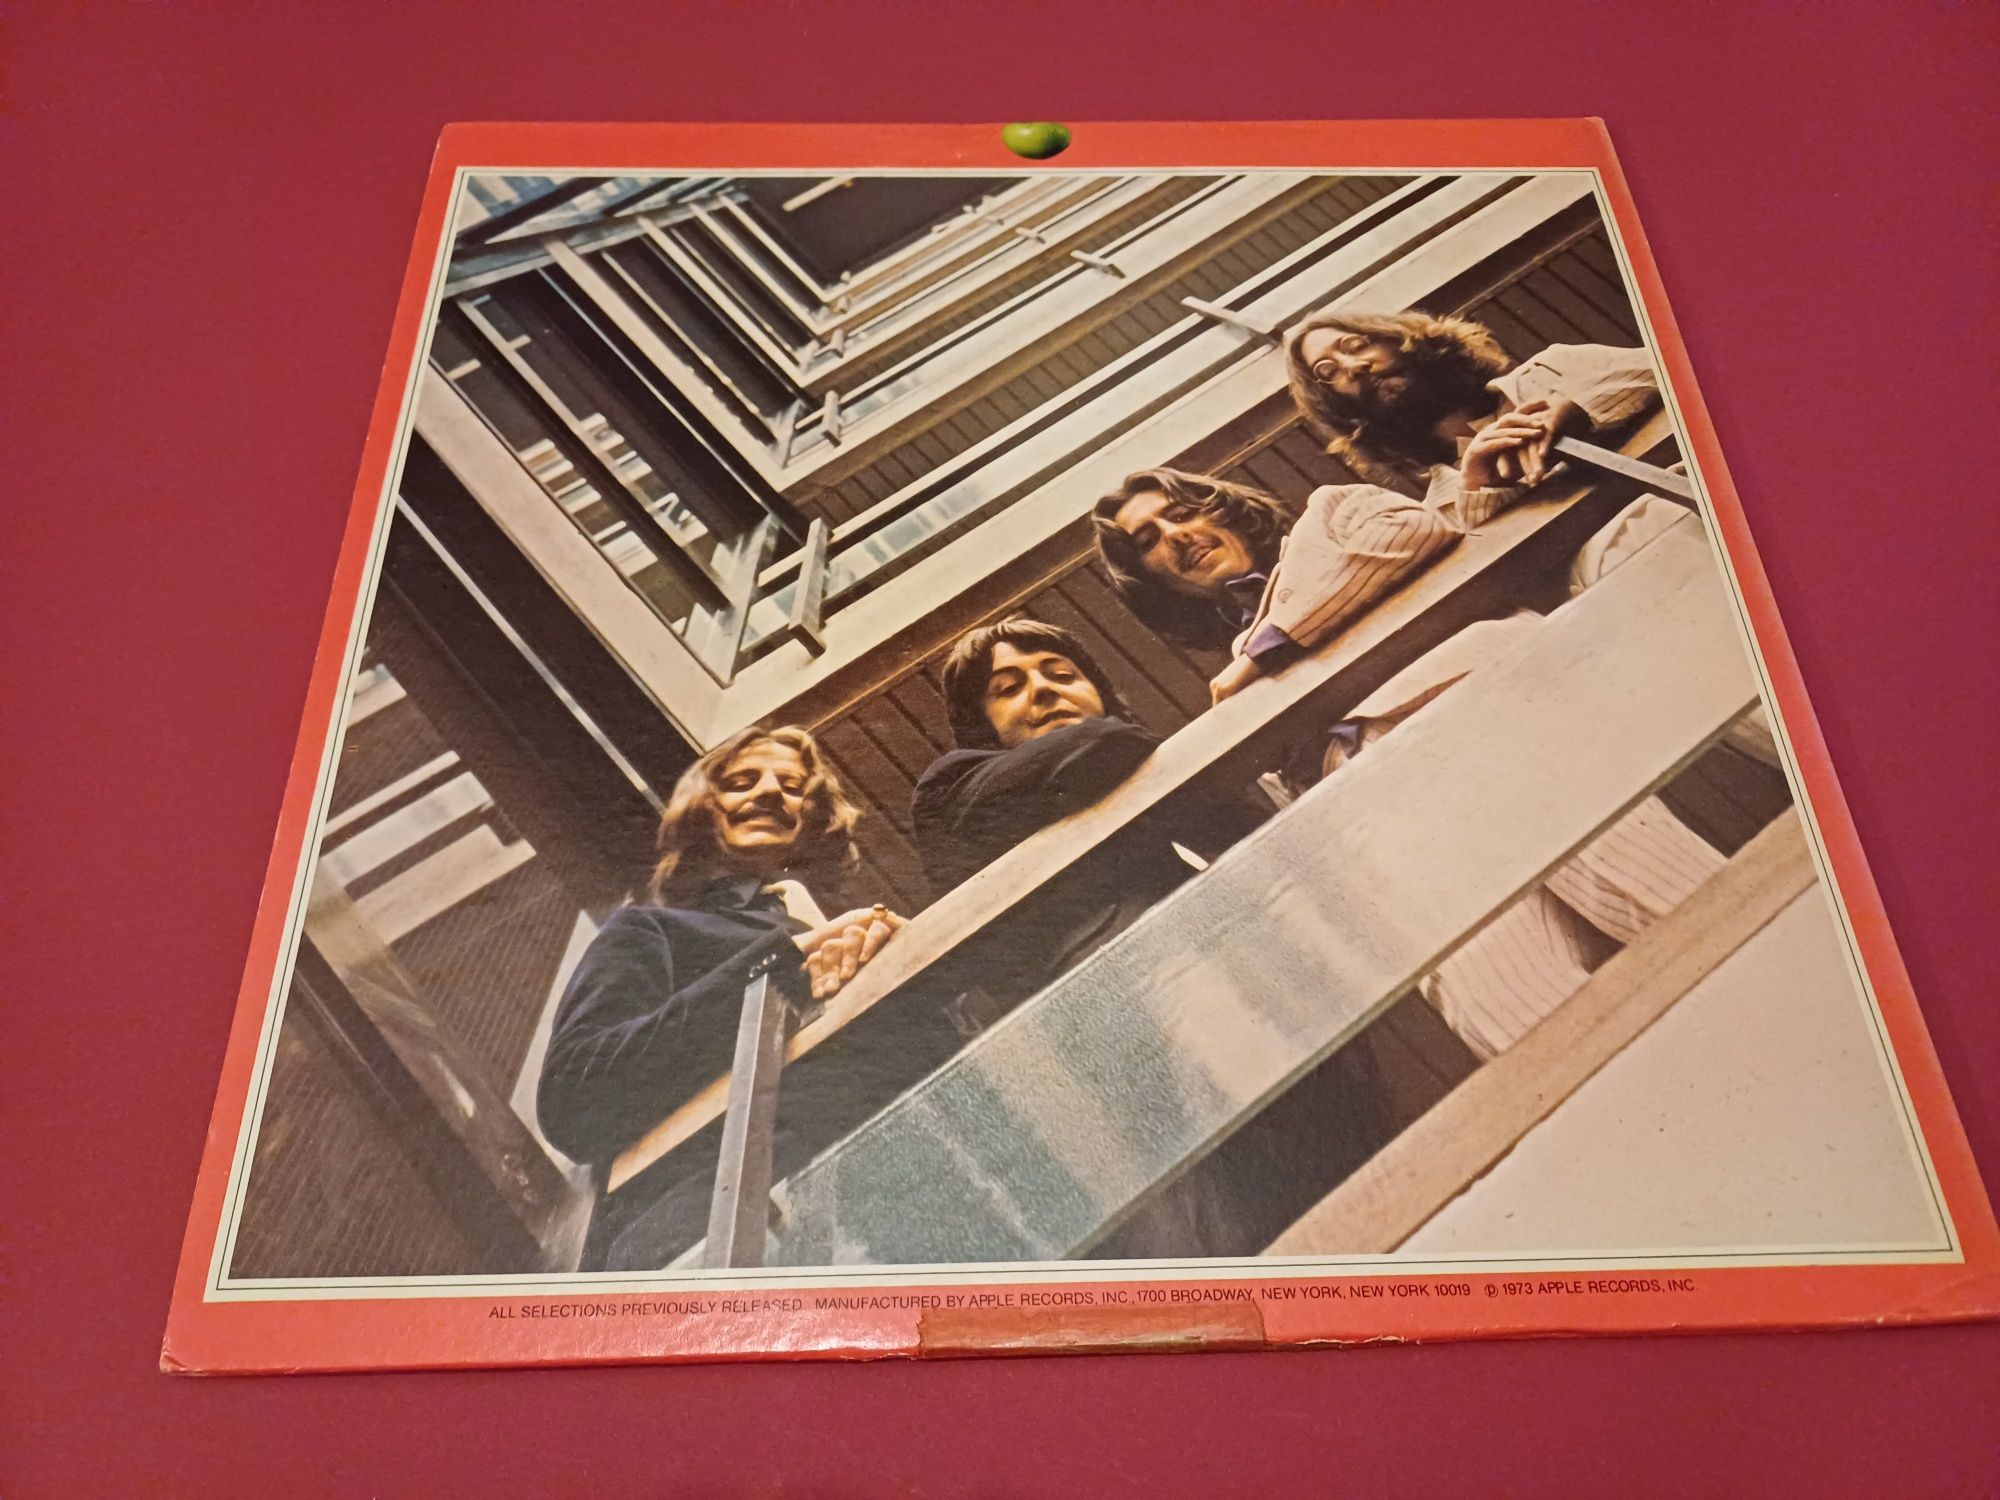 The Beatles- płyty winylowe 2 lp